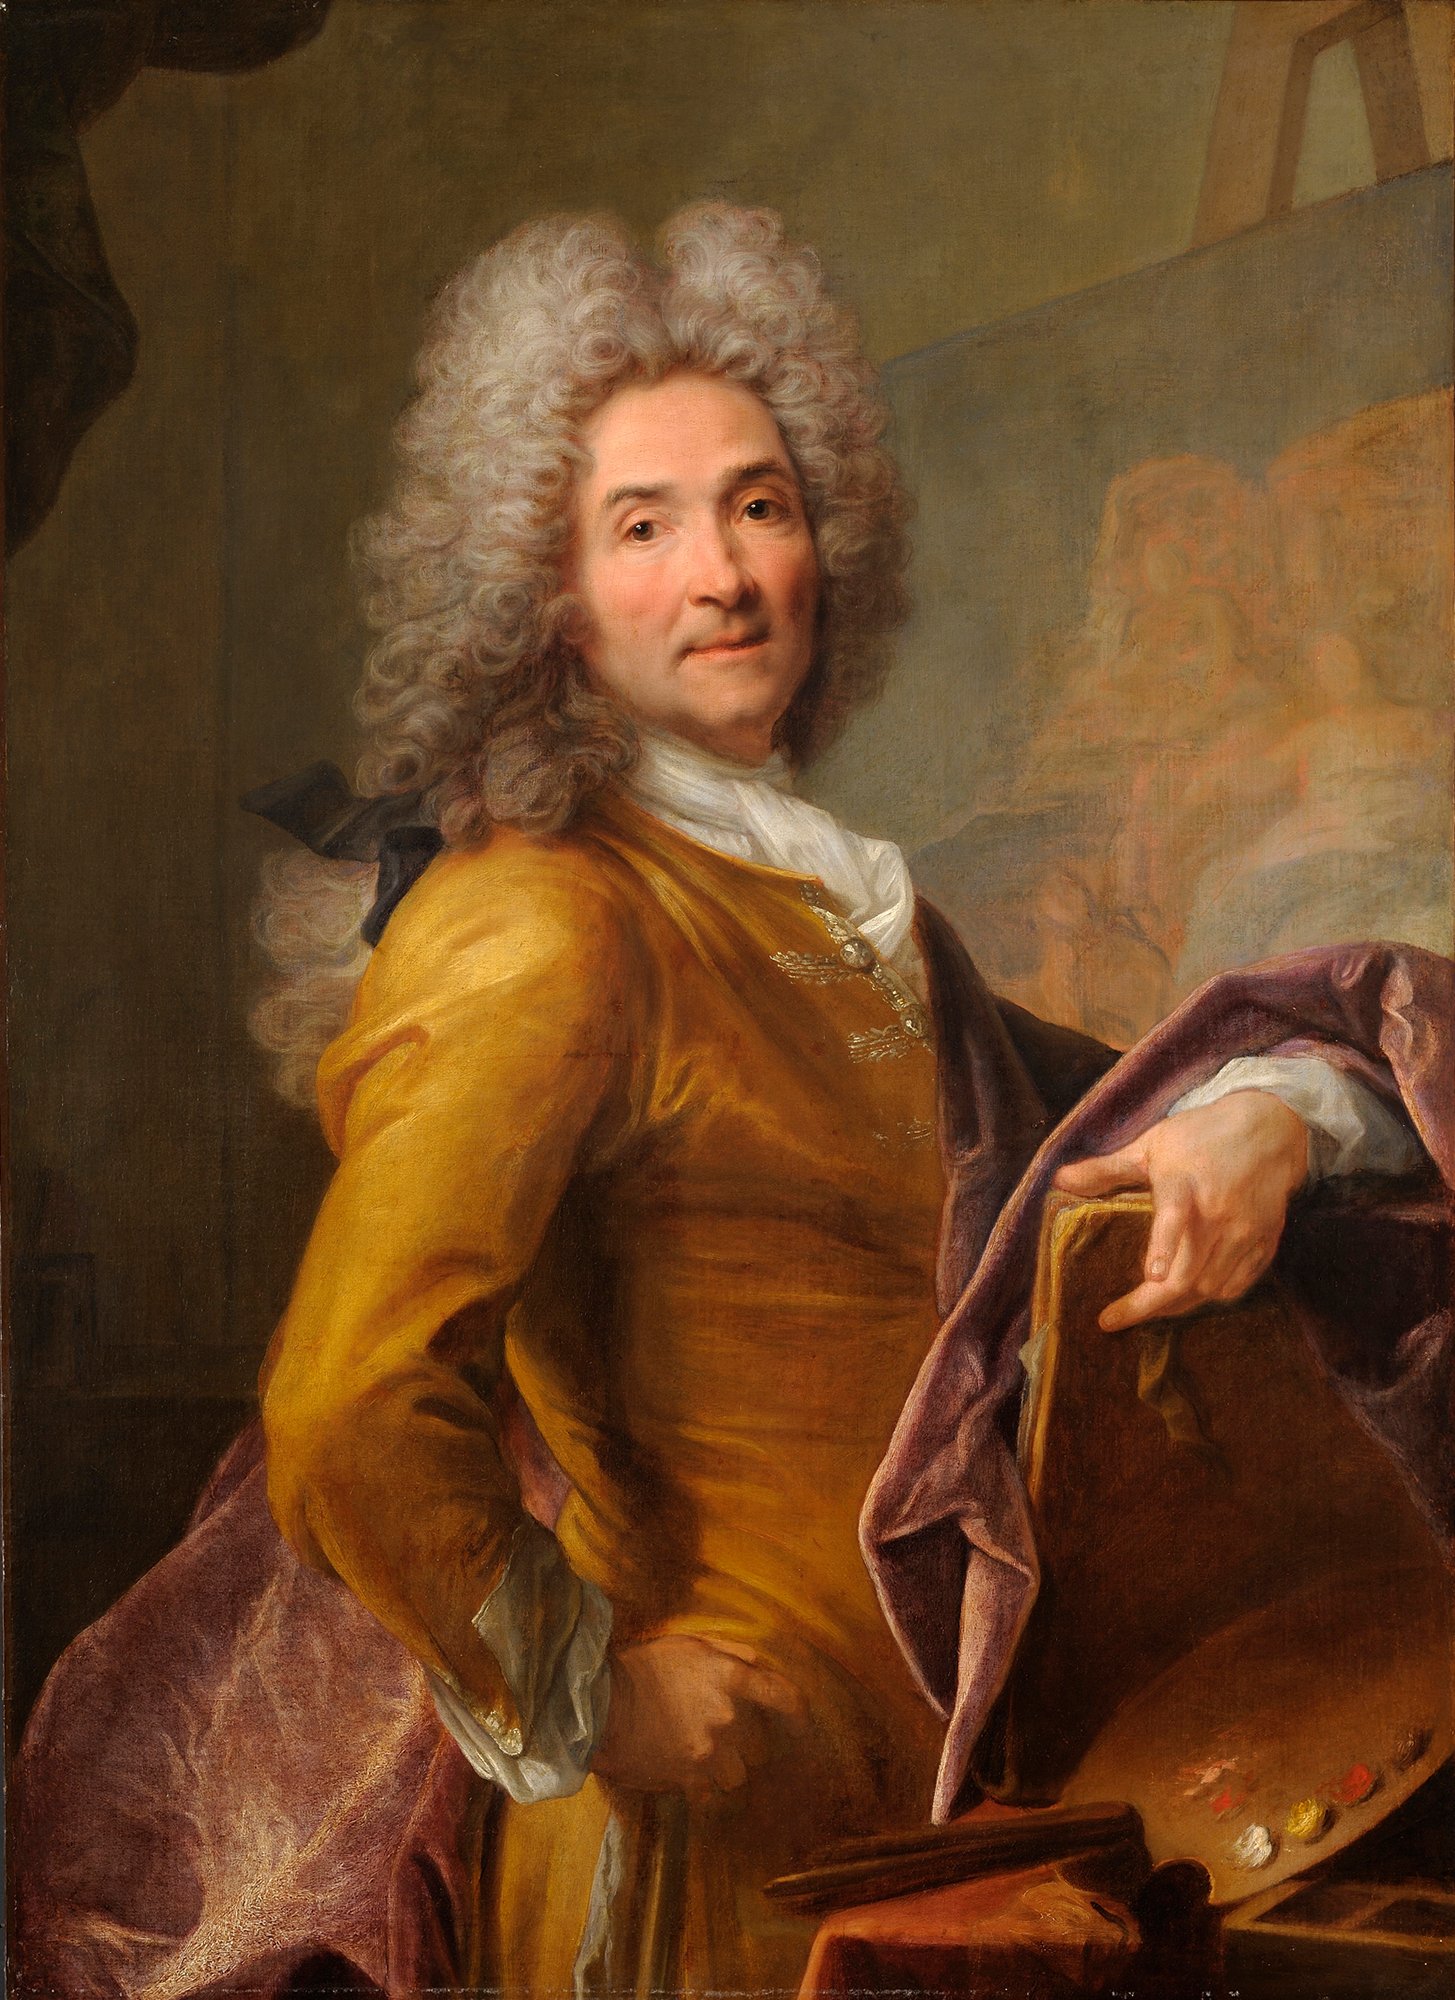 Abbildung des Werks "Selbstporträt mit Palette" von Joseph Vivien aus den Jahren 1715–1720. Der Künstler trägt ein gelbes Kostüm und hat eine graue Perücke auf.